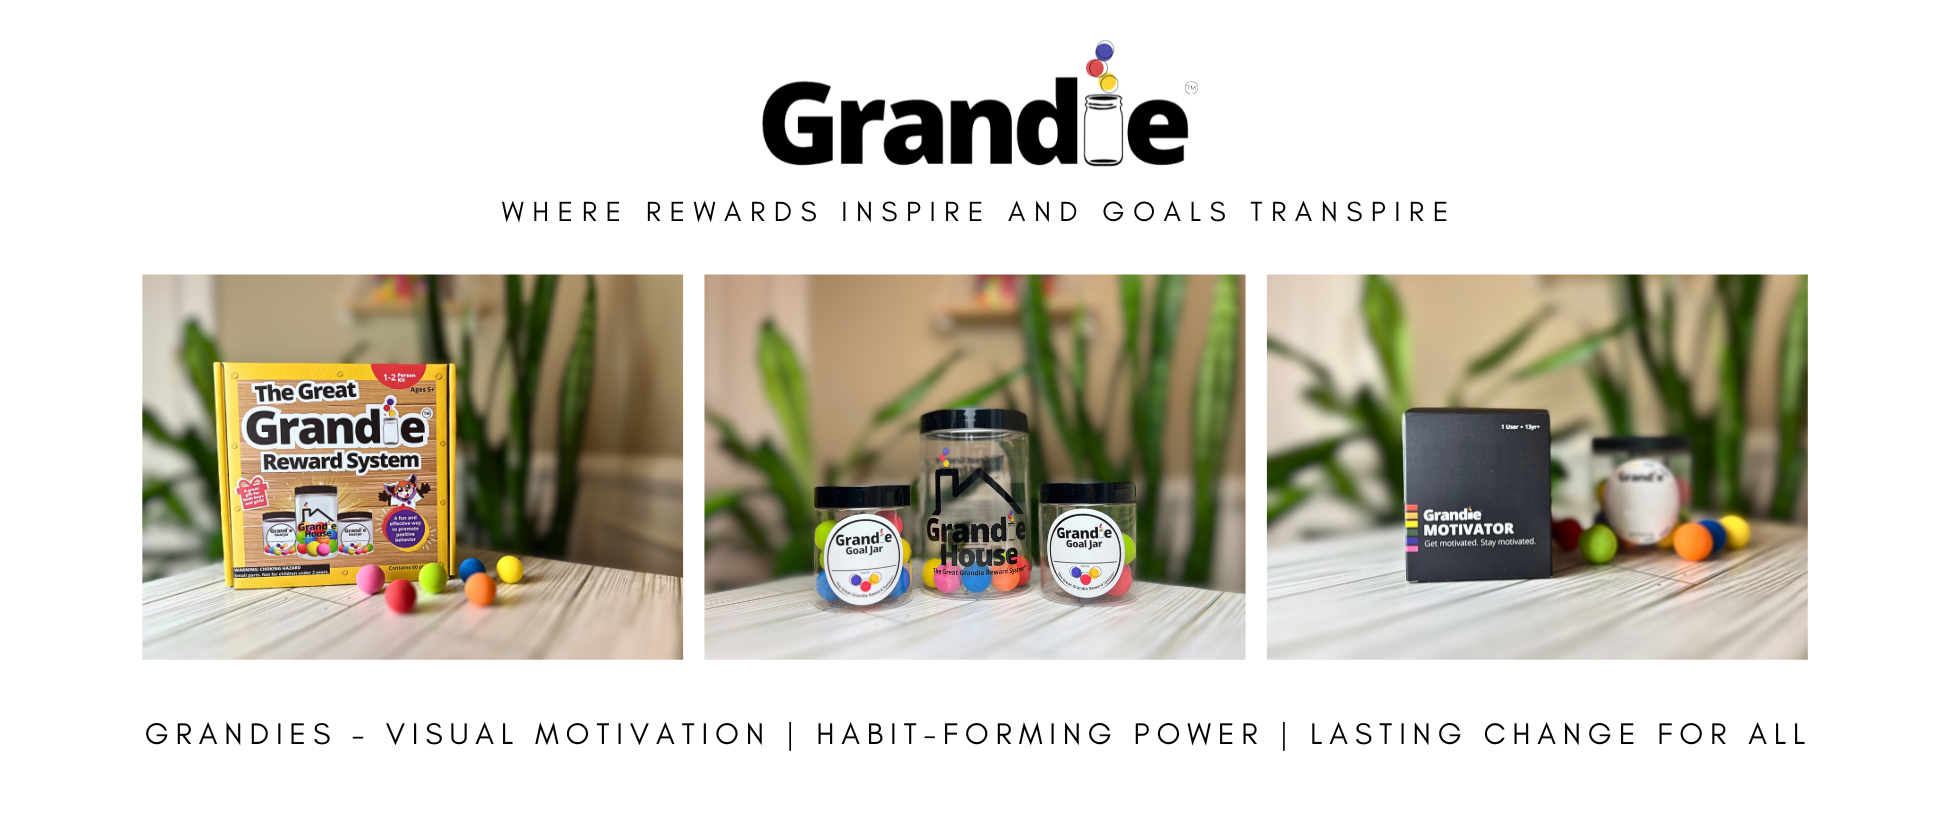 Grandie: Image of The Great Grandie Reward System Retail Box, the Grandie House, 2 Grandie Goal Jars, and the Grandie Motivator product